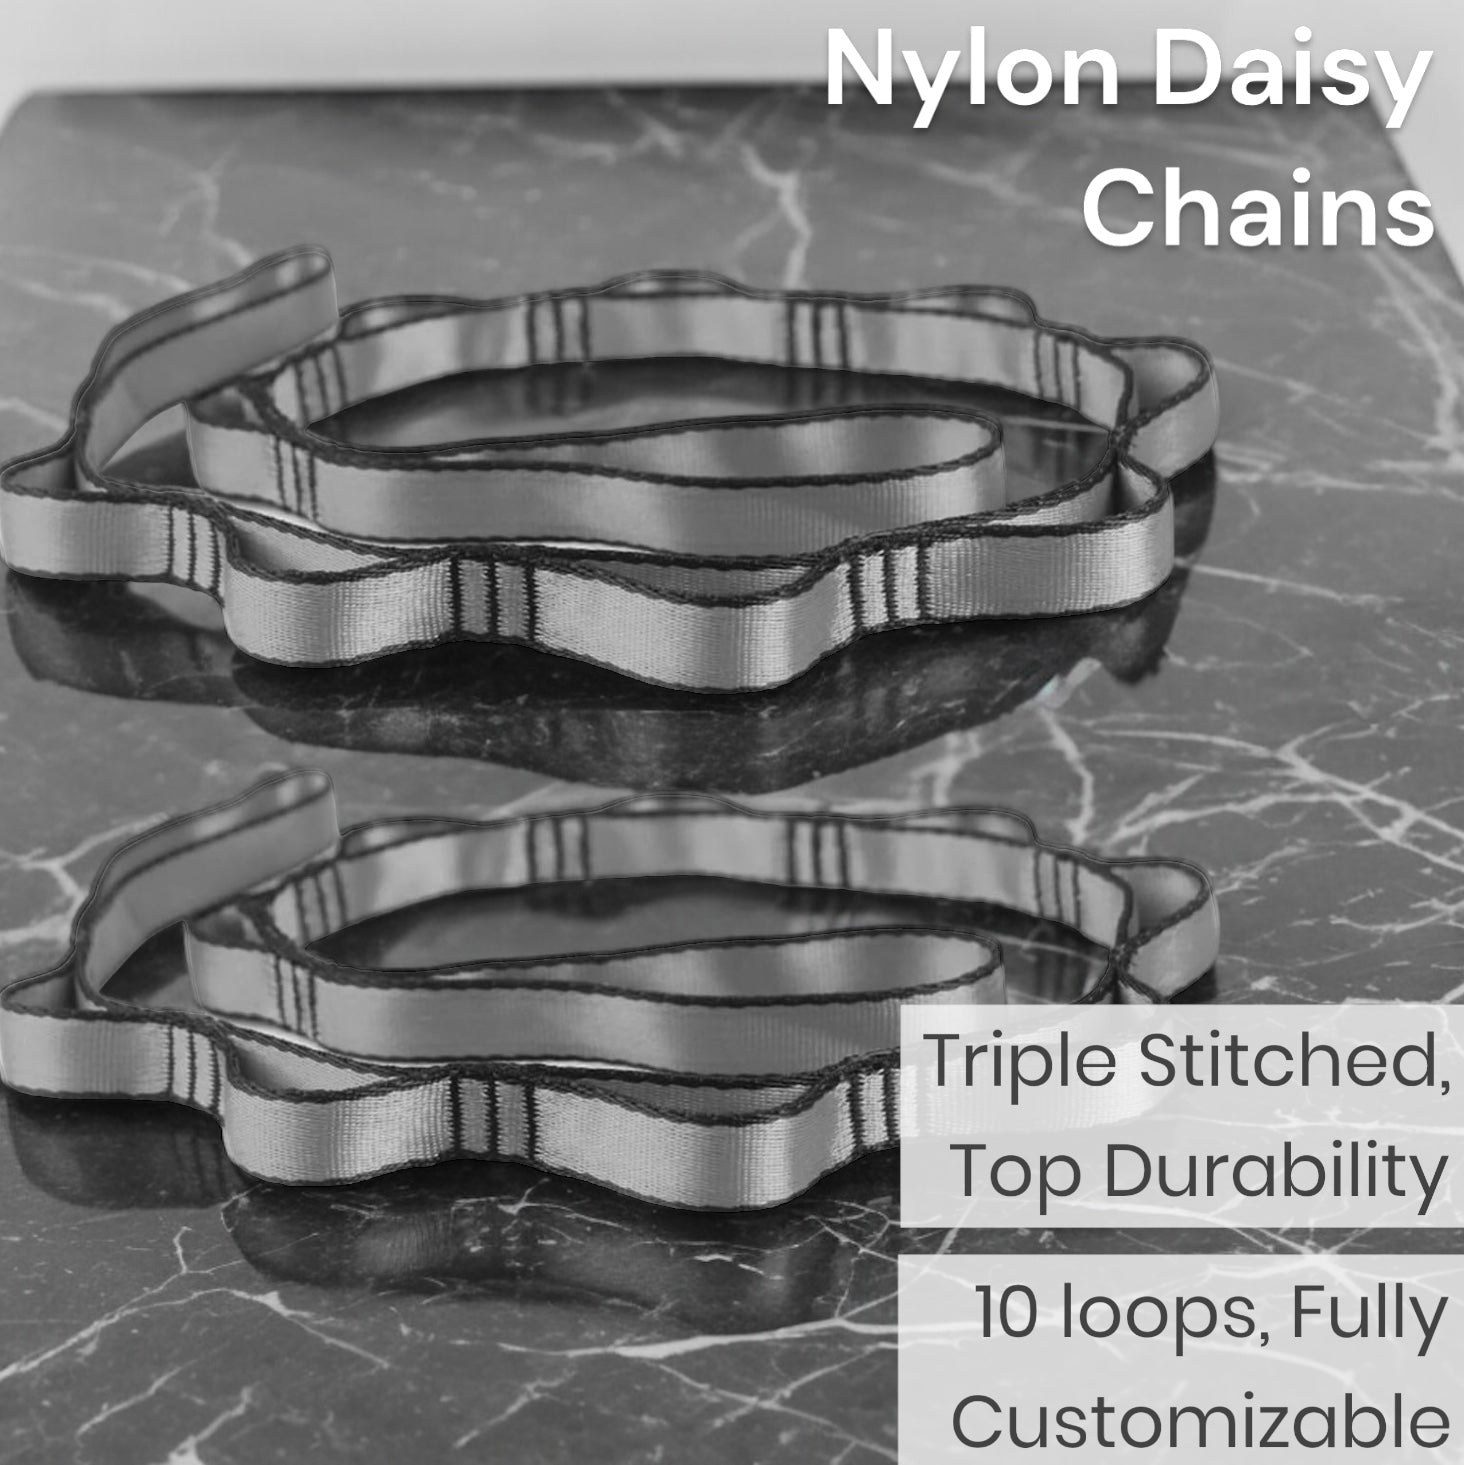 disy chains